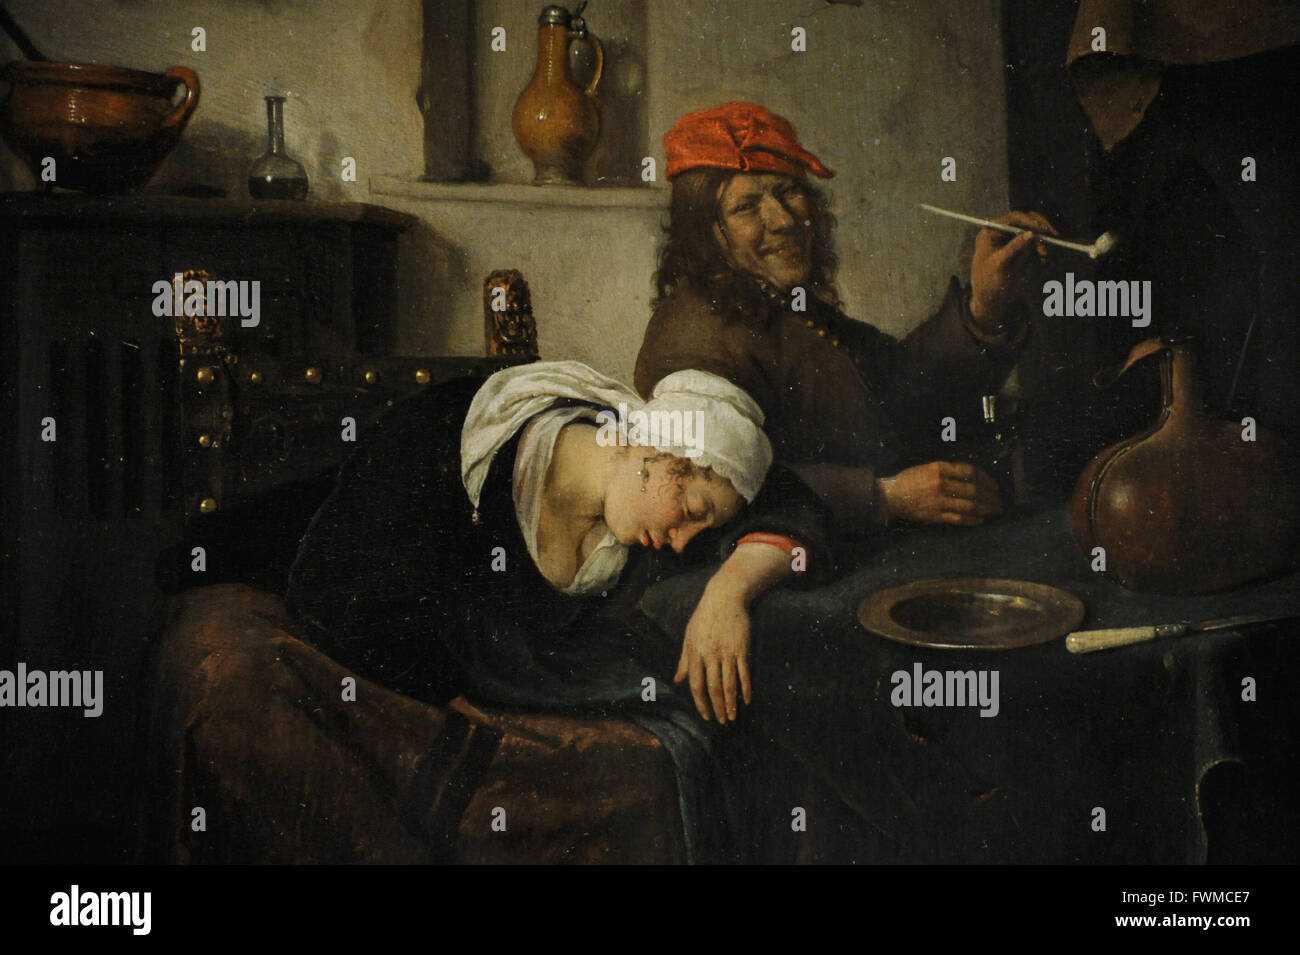 Jan Havickszoon Steen (1626-1679). Niederländischer Maler. Die Feiernden, 1660. Detail. Die Eremitage. Sankt Petersburg. Russland. Stockfoto